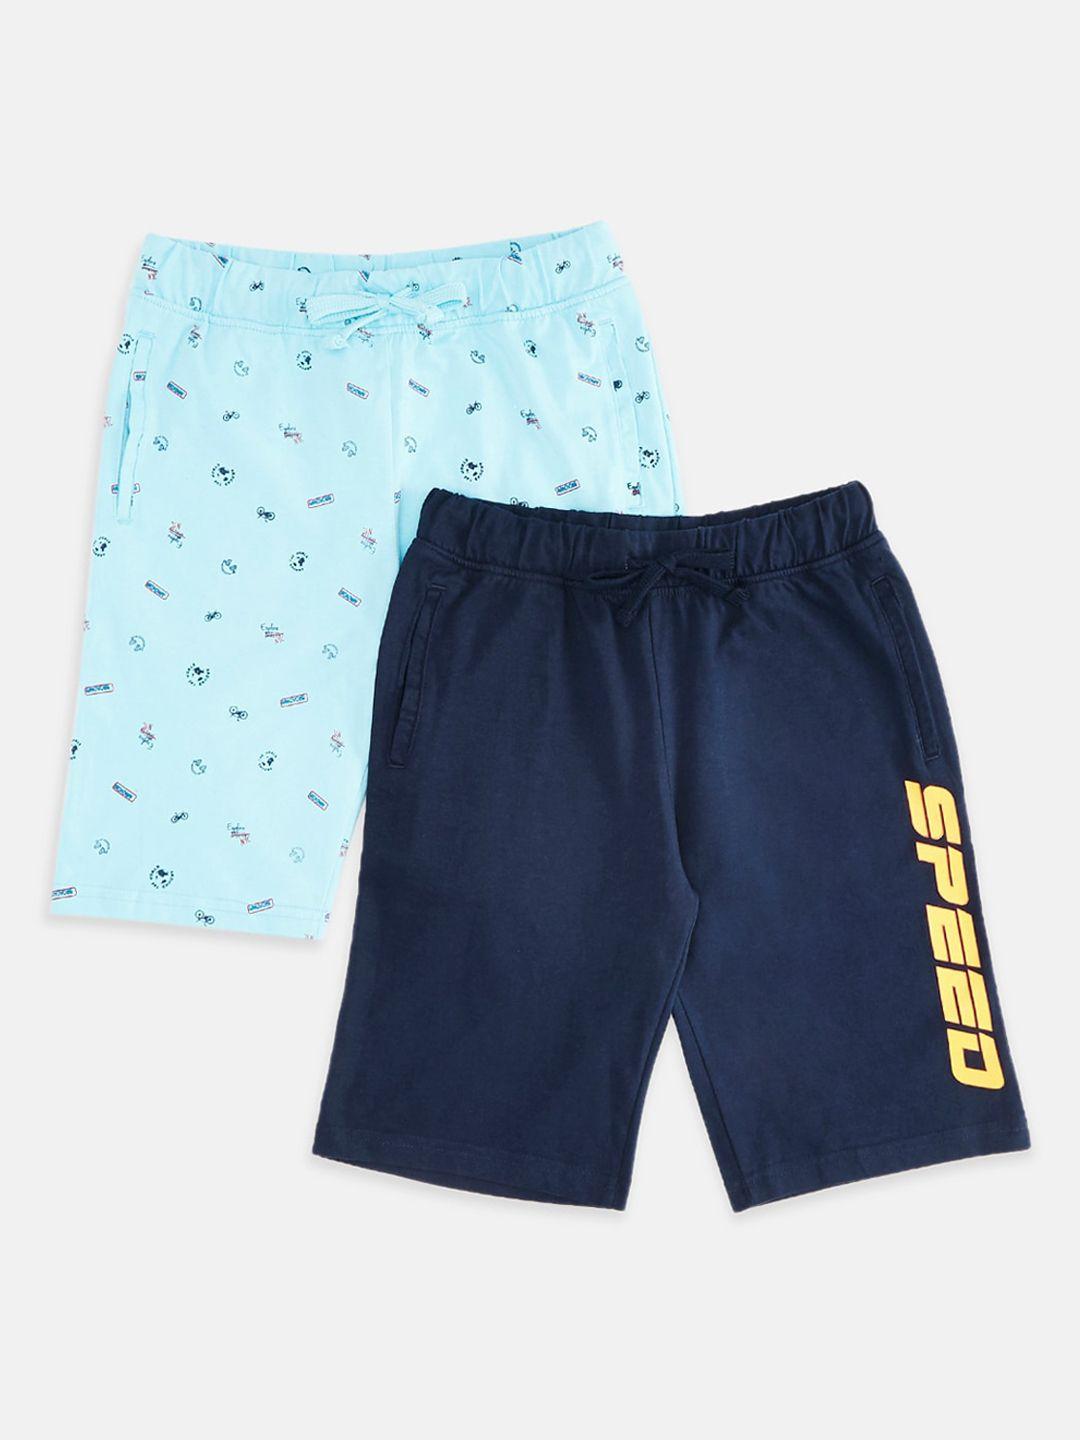 pantaloons junior boys blue & navy blue pack of 2 printed shorts